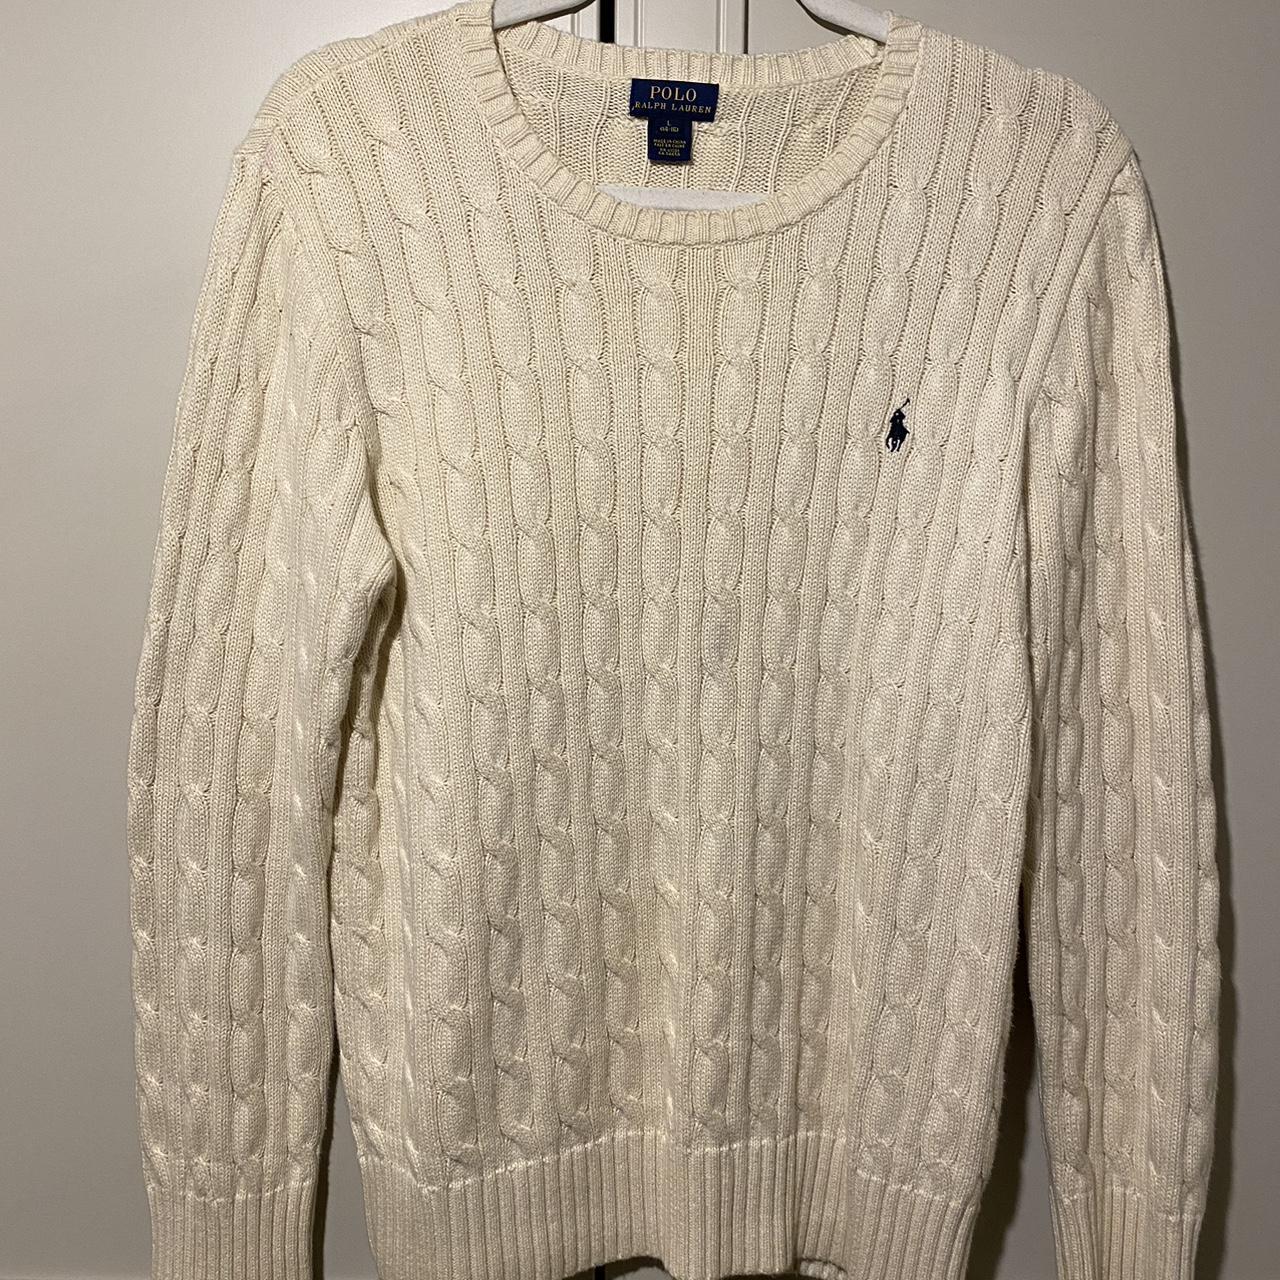 Polo Ralph Lauren Men's Cream Sweatshirt | Depop